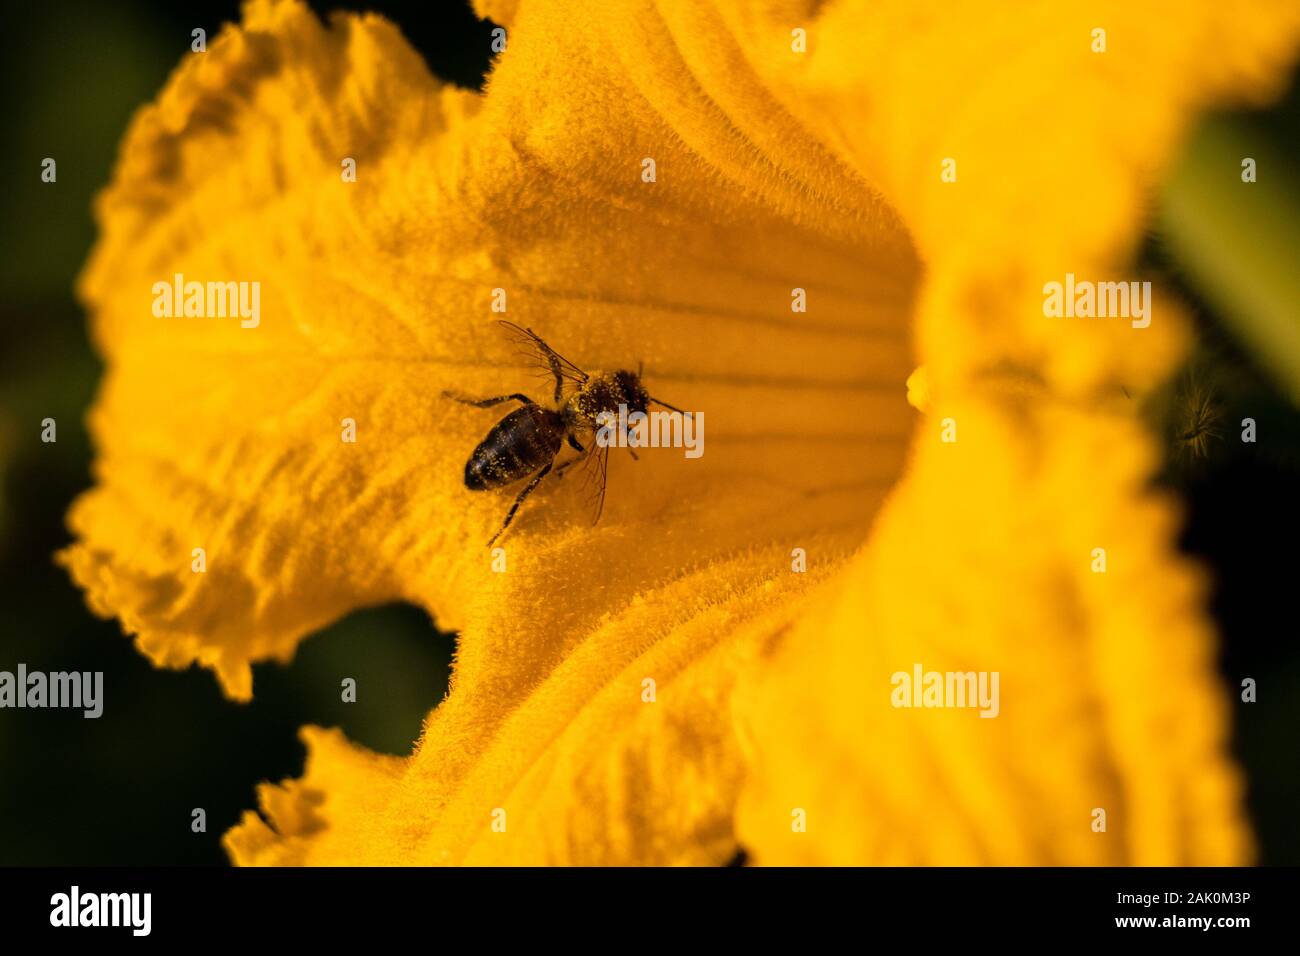 Biene auf Blume - Biene bestäubt gelbe Kürbisblume, sonnigen Sommertag, Nahaufnahme Stockfoto